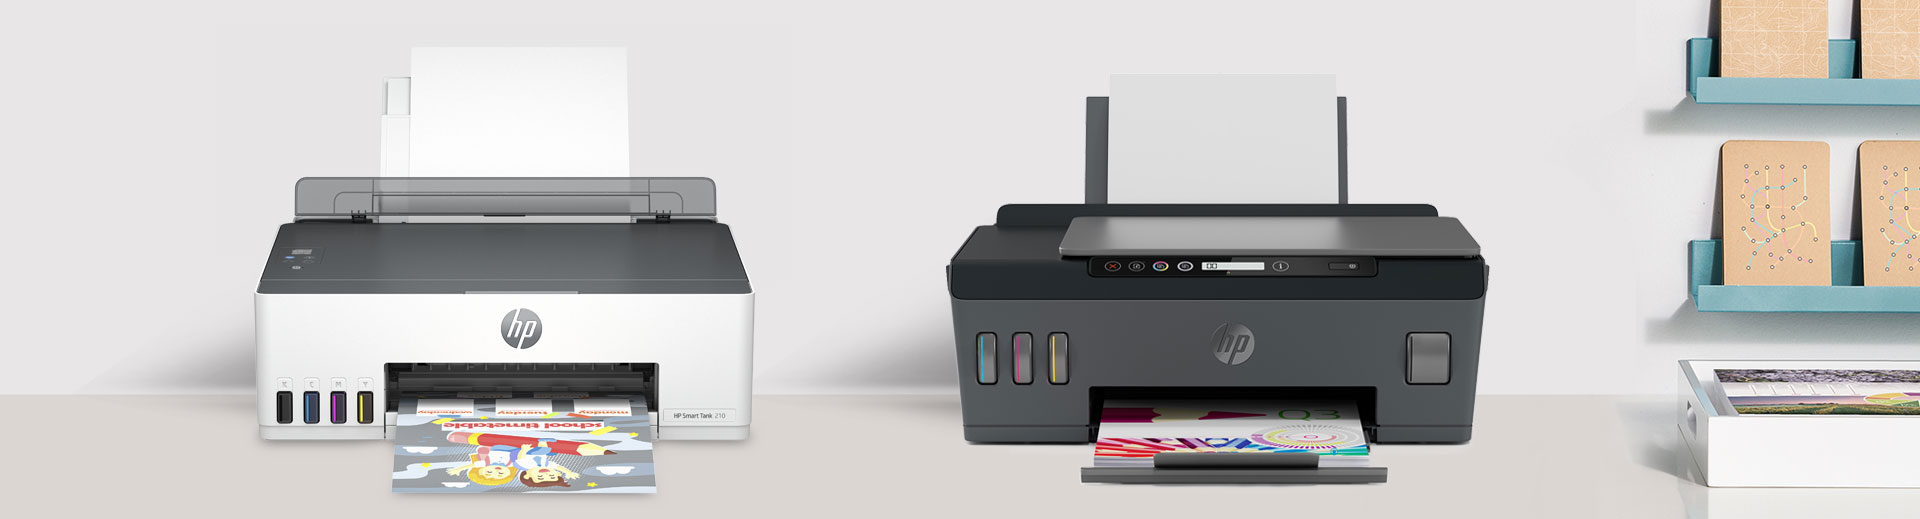 ข้อ 43. เครื่องพิมพ์แบบฉีดหมึกพร้อมติดตั้งถังหมึกพิมพ์ (Ink Tank Printer) ราคา 4,100 บาท